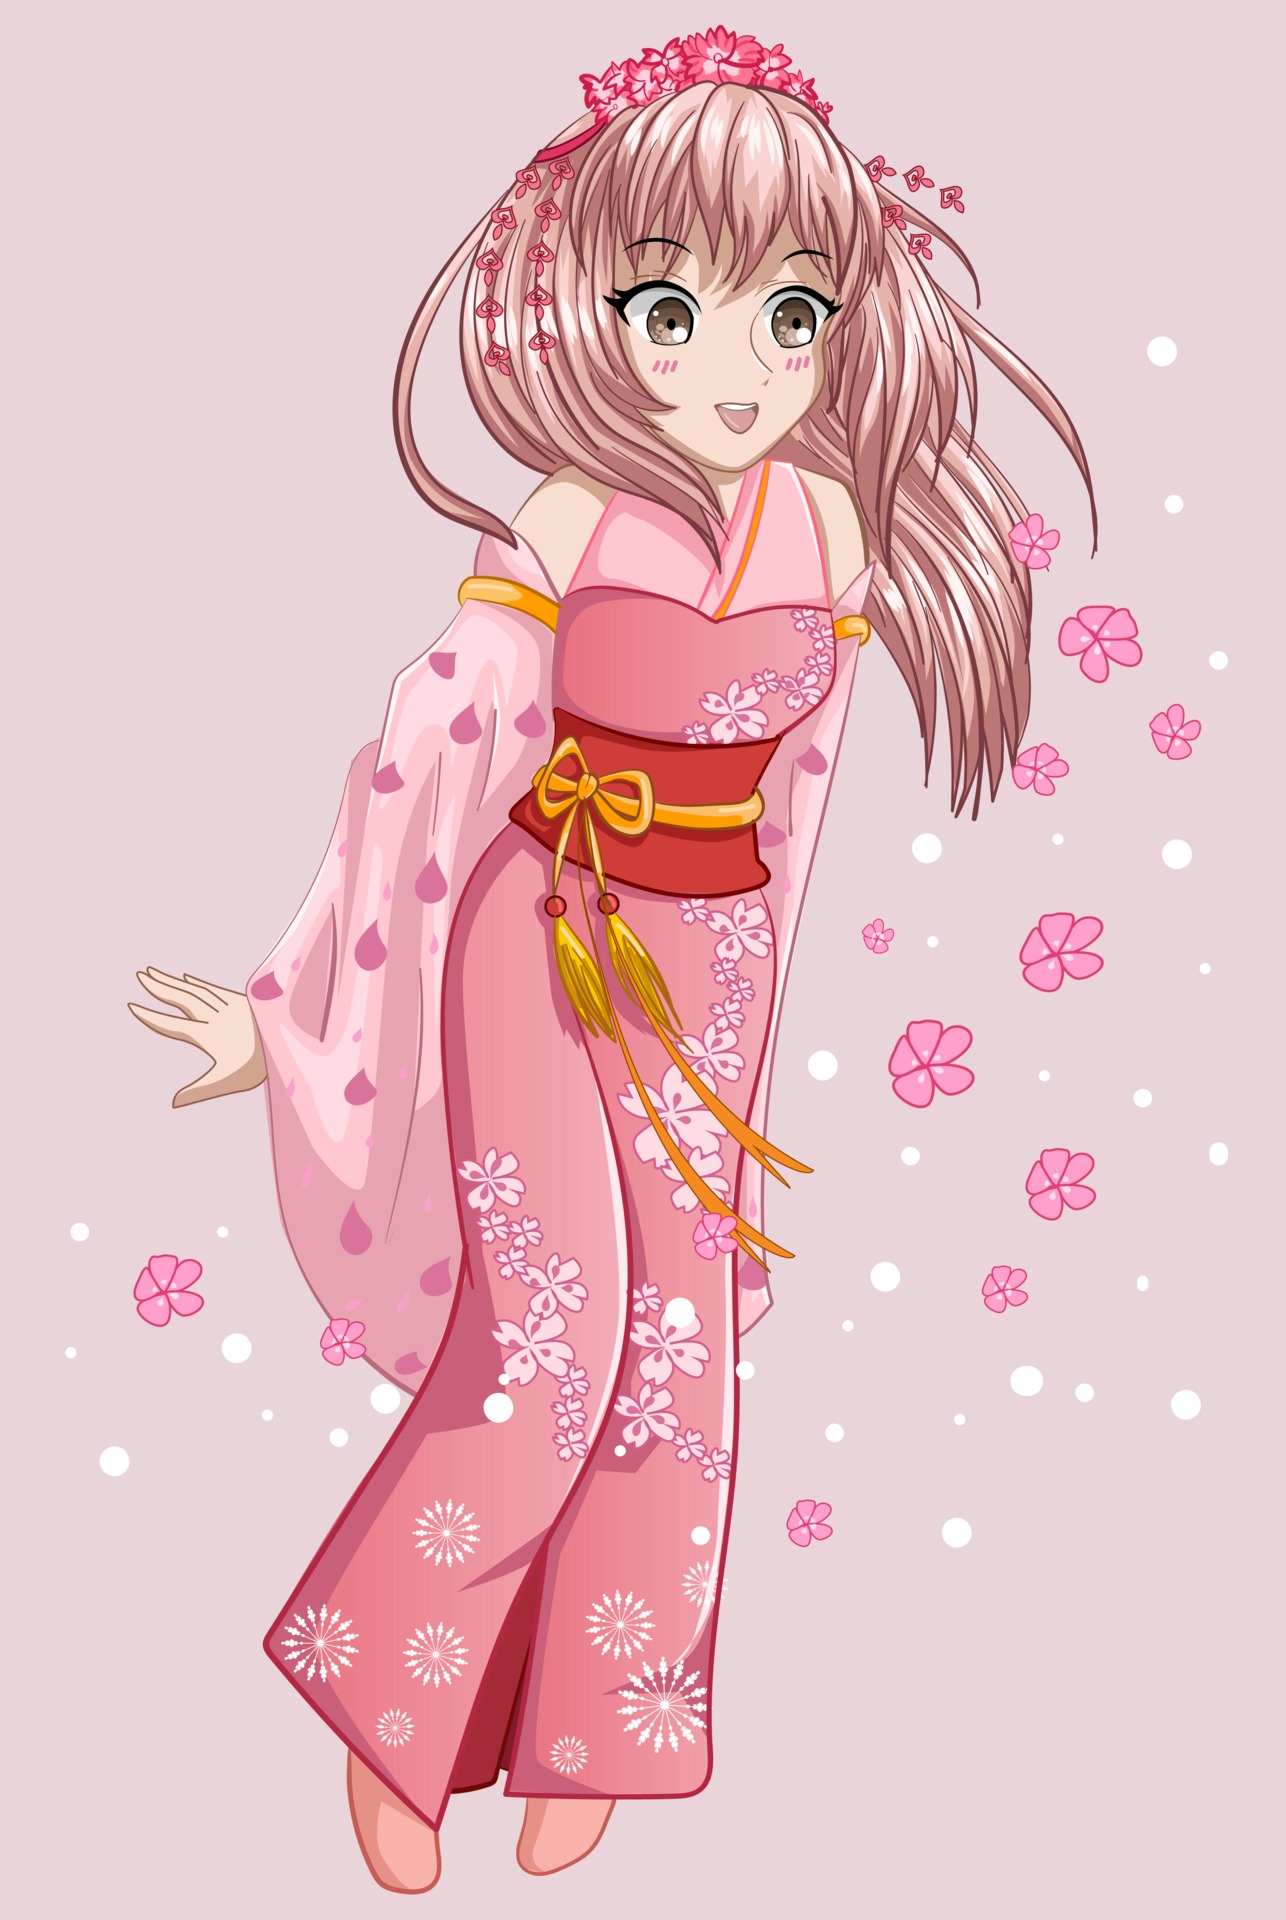 Desenho animado no estilo kawaii de uma linda garota com cabelo colorido  segurando uma boneca de cabelo cor-de-rosa